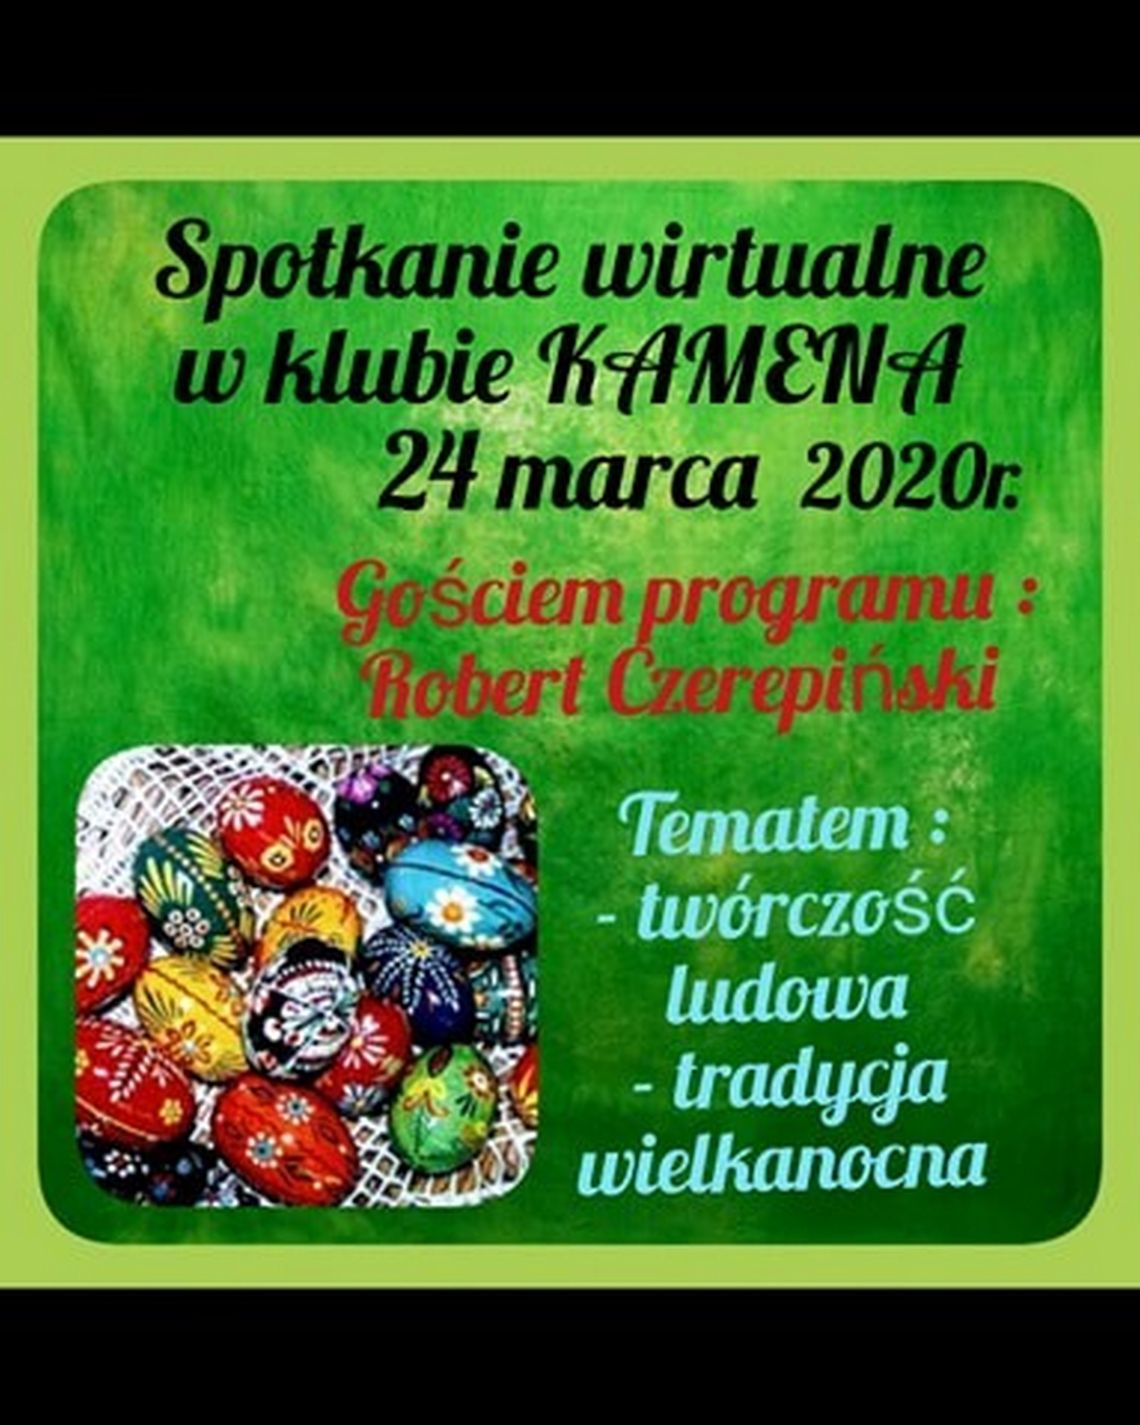 Spotkanie w Klubie Kamen on-line /24 marca 2020